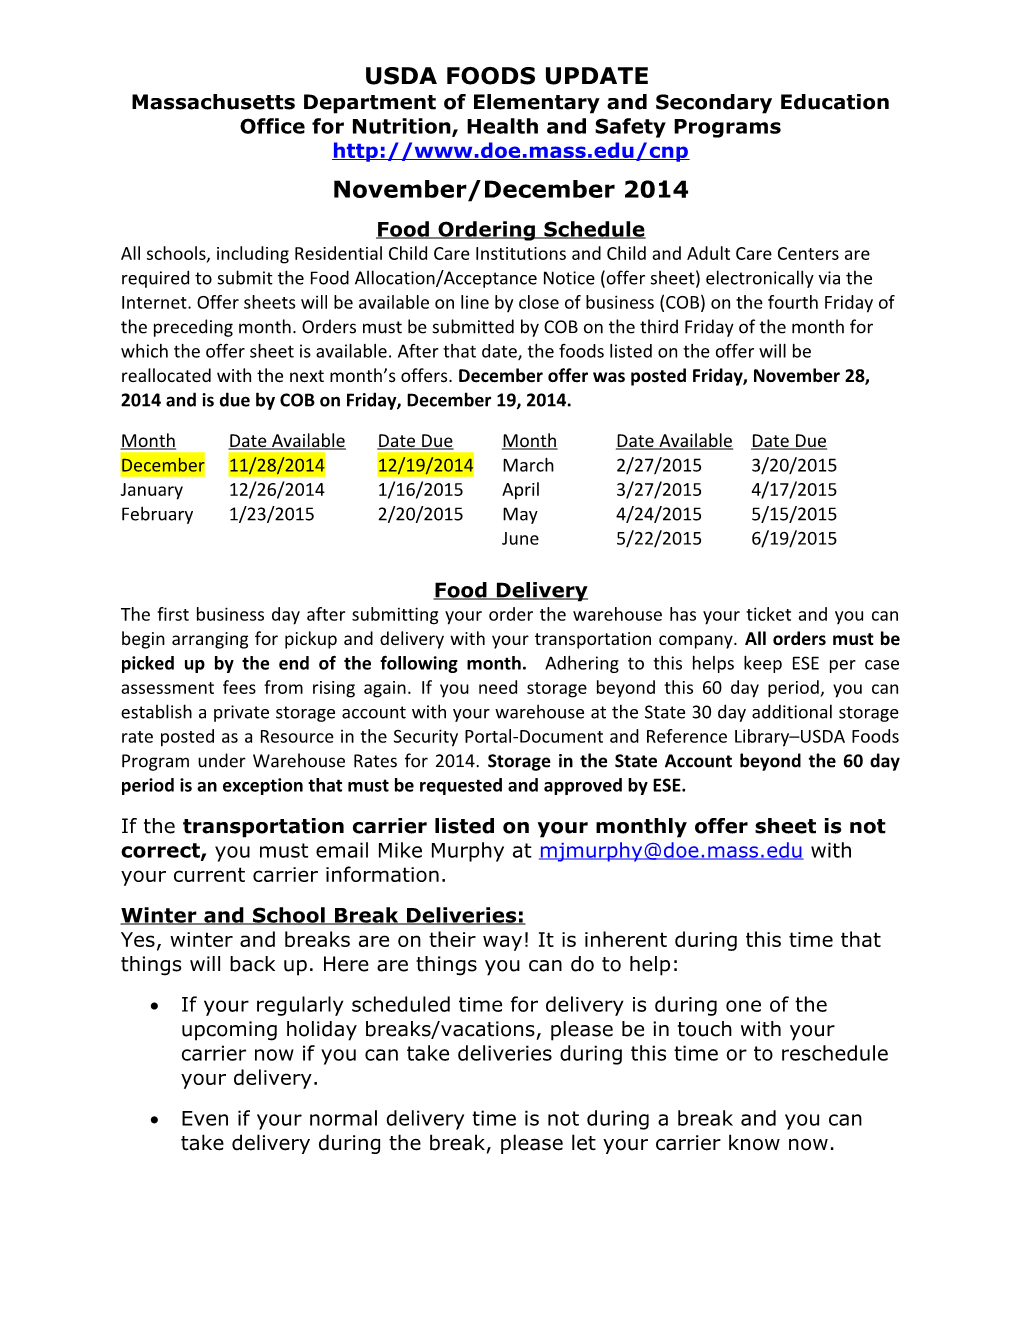 USDA Foods Update November/December 2014